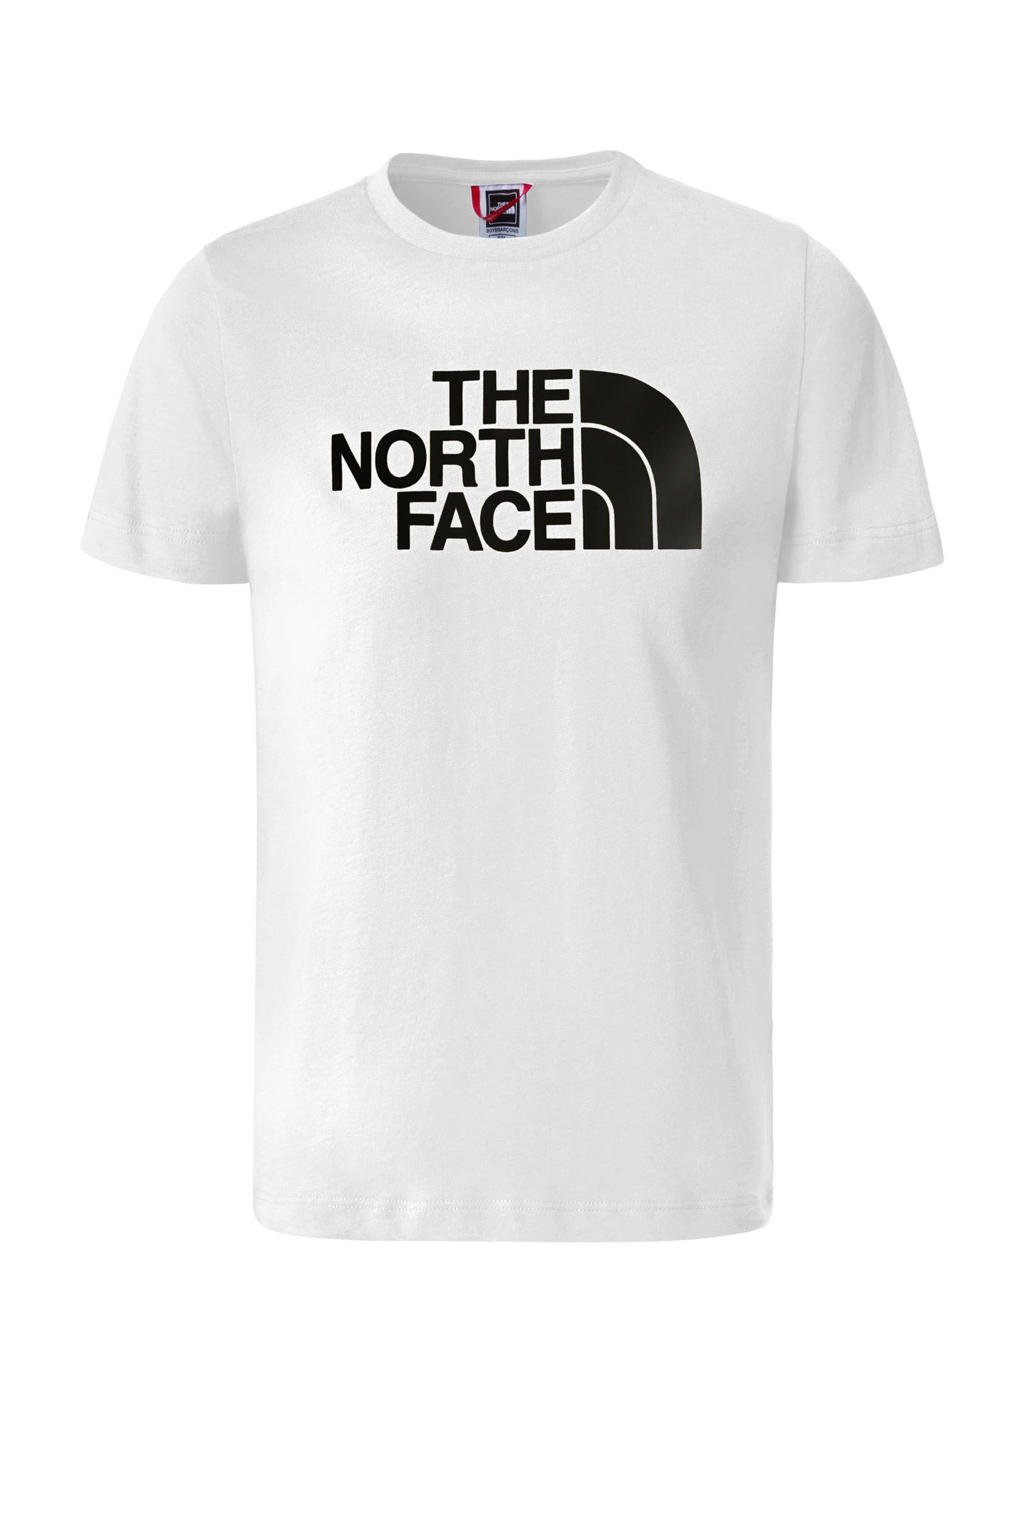 Wit en zwarte jongens The North Face T-shirt van katoen met logo dessin, korte mouwen en ronde hals